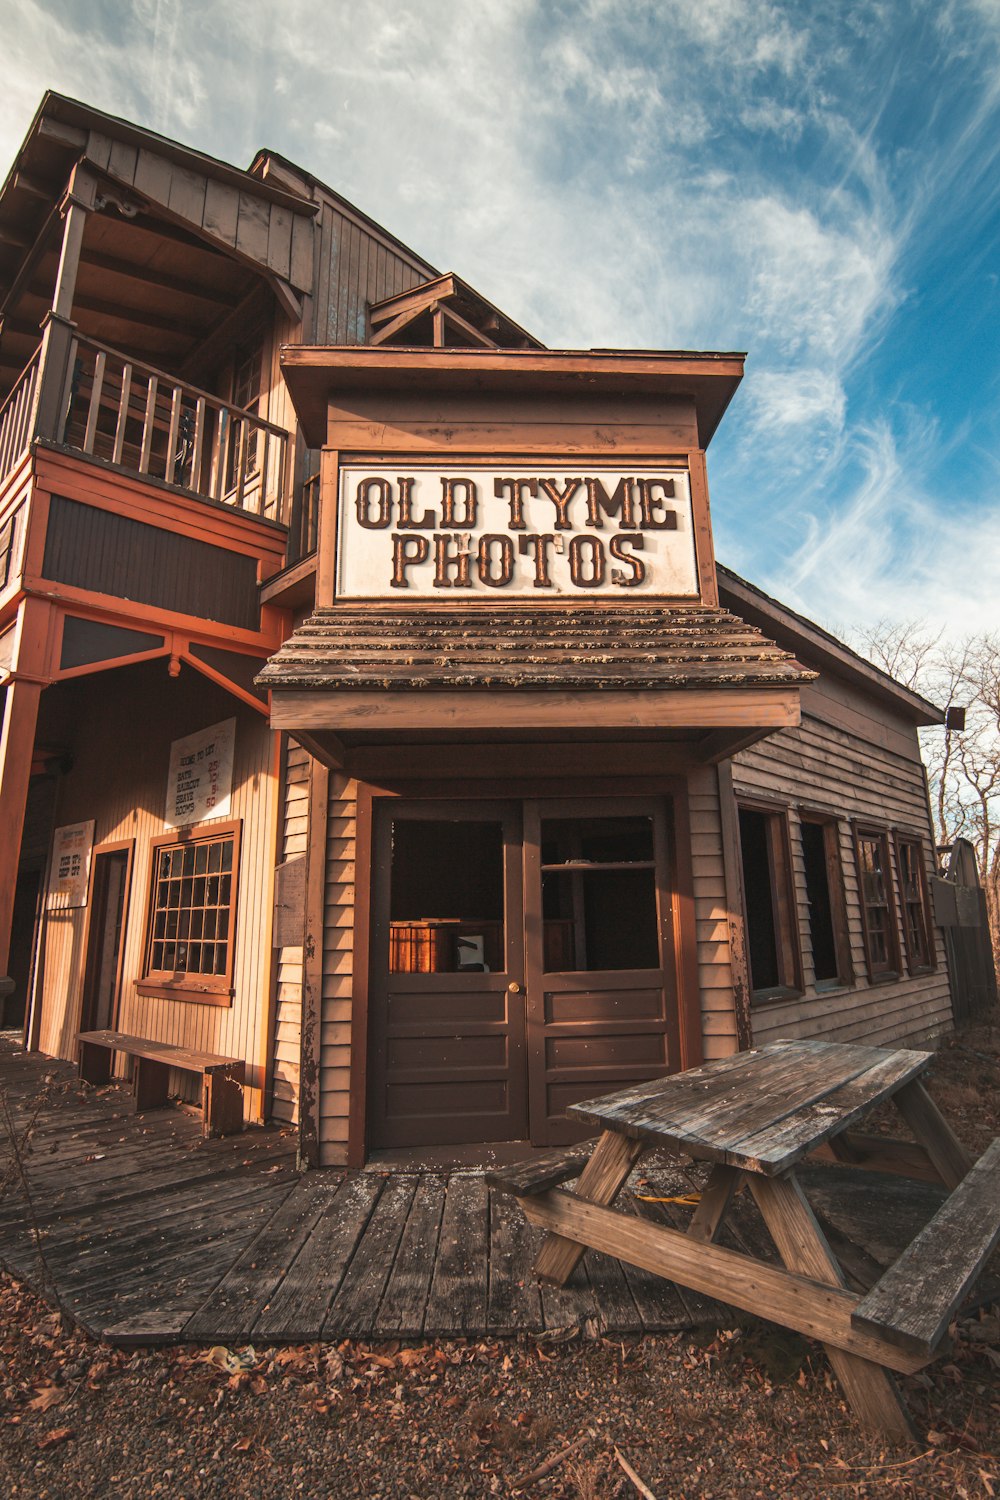 Ein Gebäude mit einem Schild mit der Aufschrift "Old Tyme Photos"